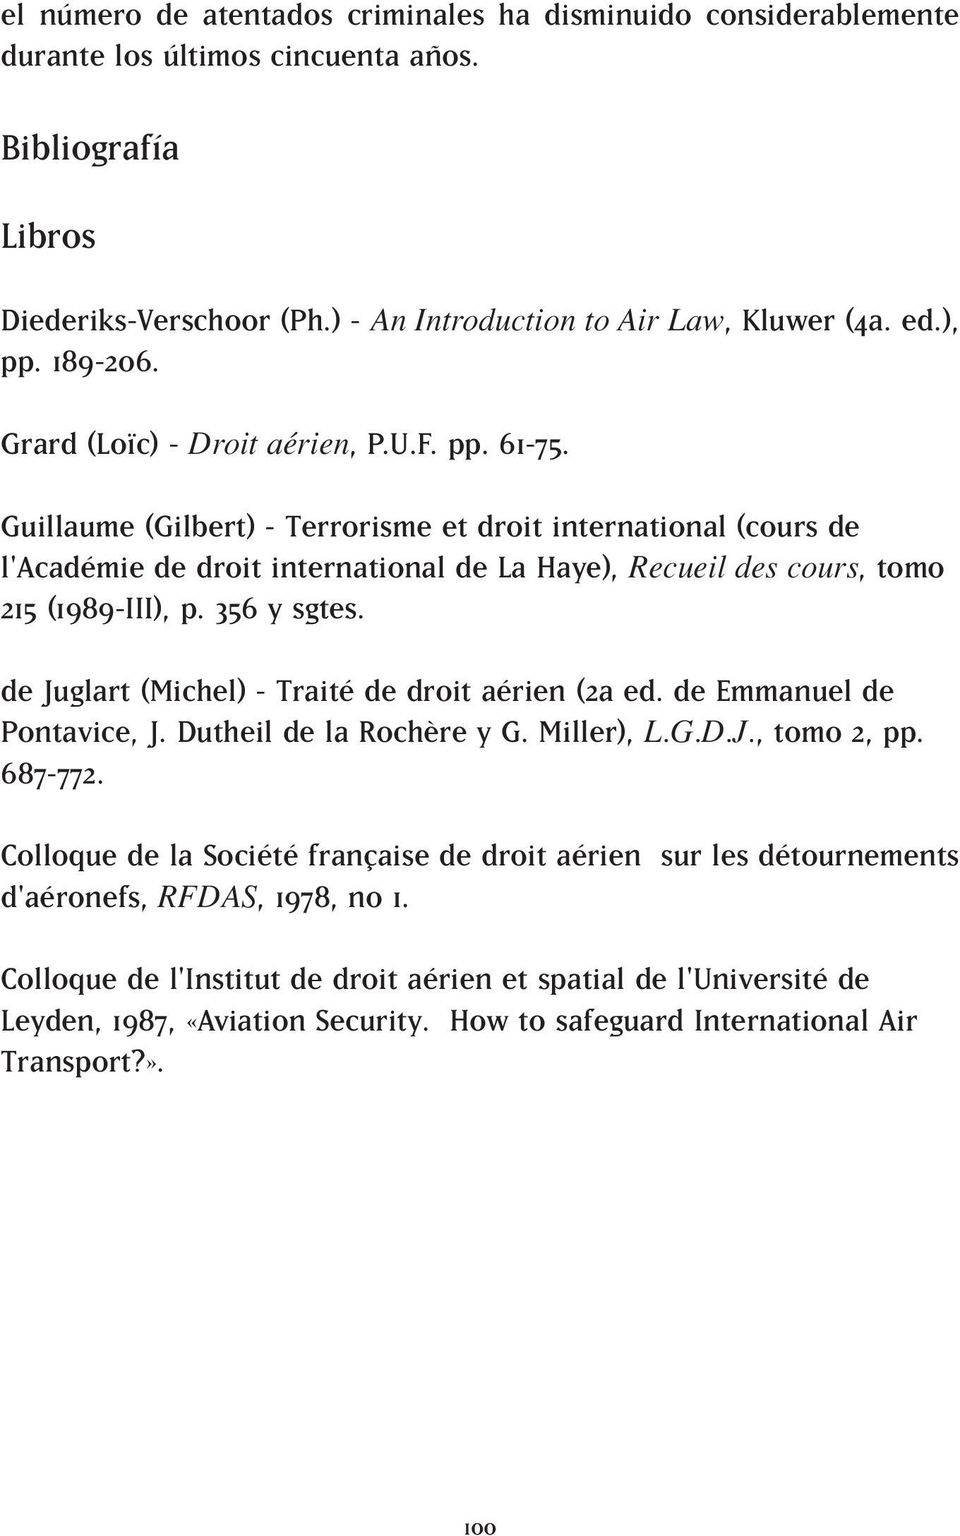 Guillaume (Gilbert) - Terrorisme et droit international (cours de l'académie de droit international de La Haye), Recueil des cours, tomo 215 (1989-III), p. 356 y sgtes.